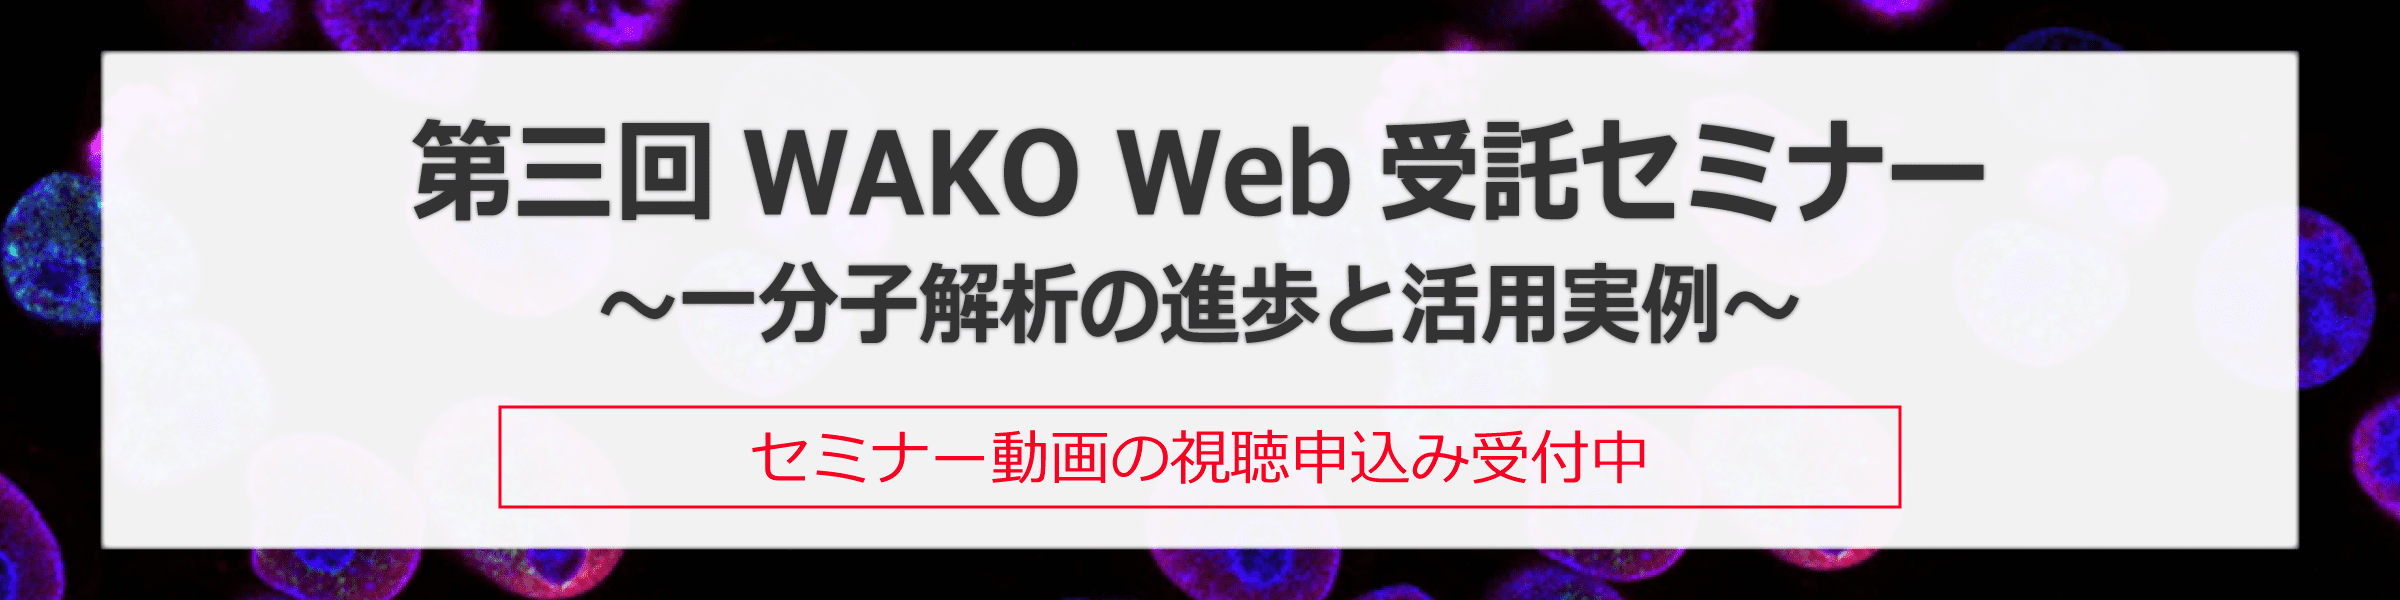 第三回WAKO Web 受託セミナー